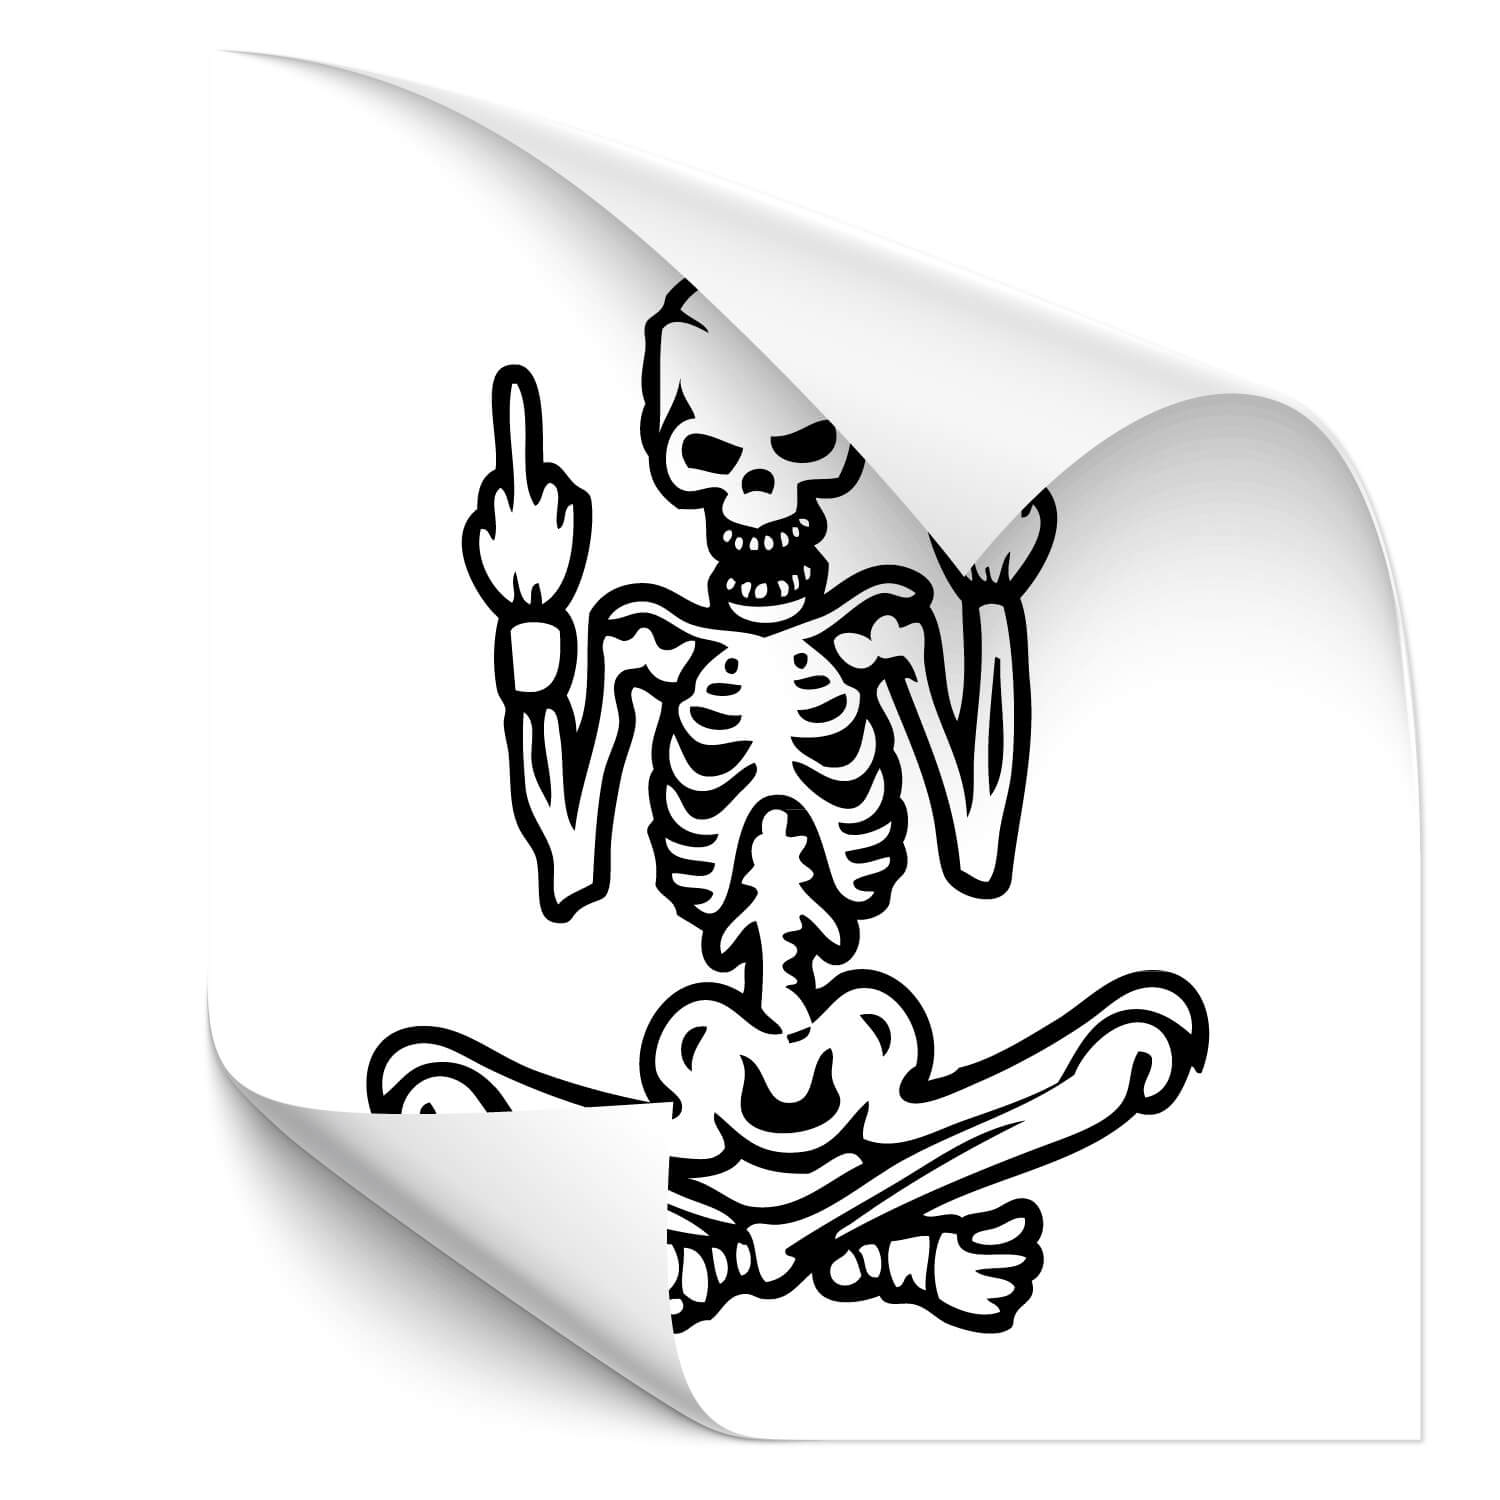 https://www.klebe-x.shop/media/image/95/87/72/Tuning-Sticker-Skull-Skelett-Mittelfinger-A00380-1.jpg